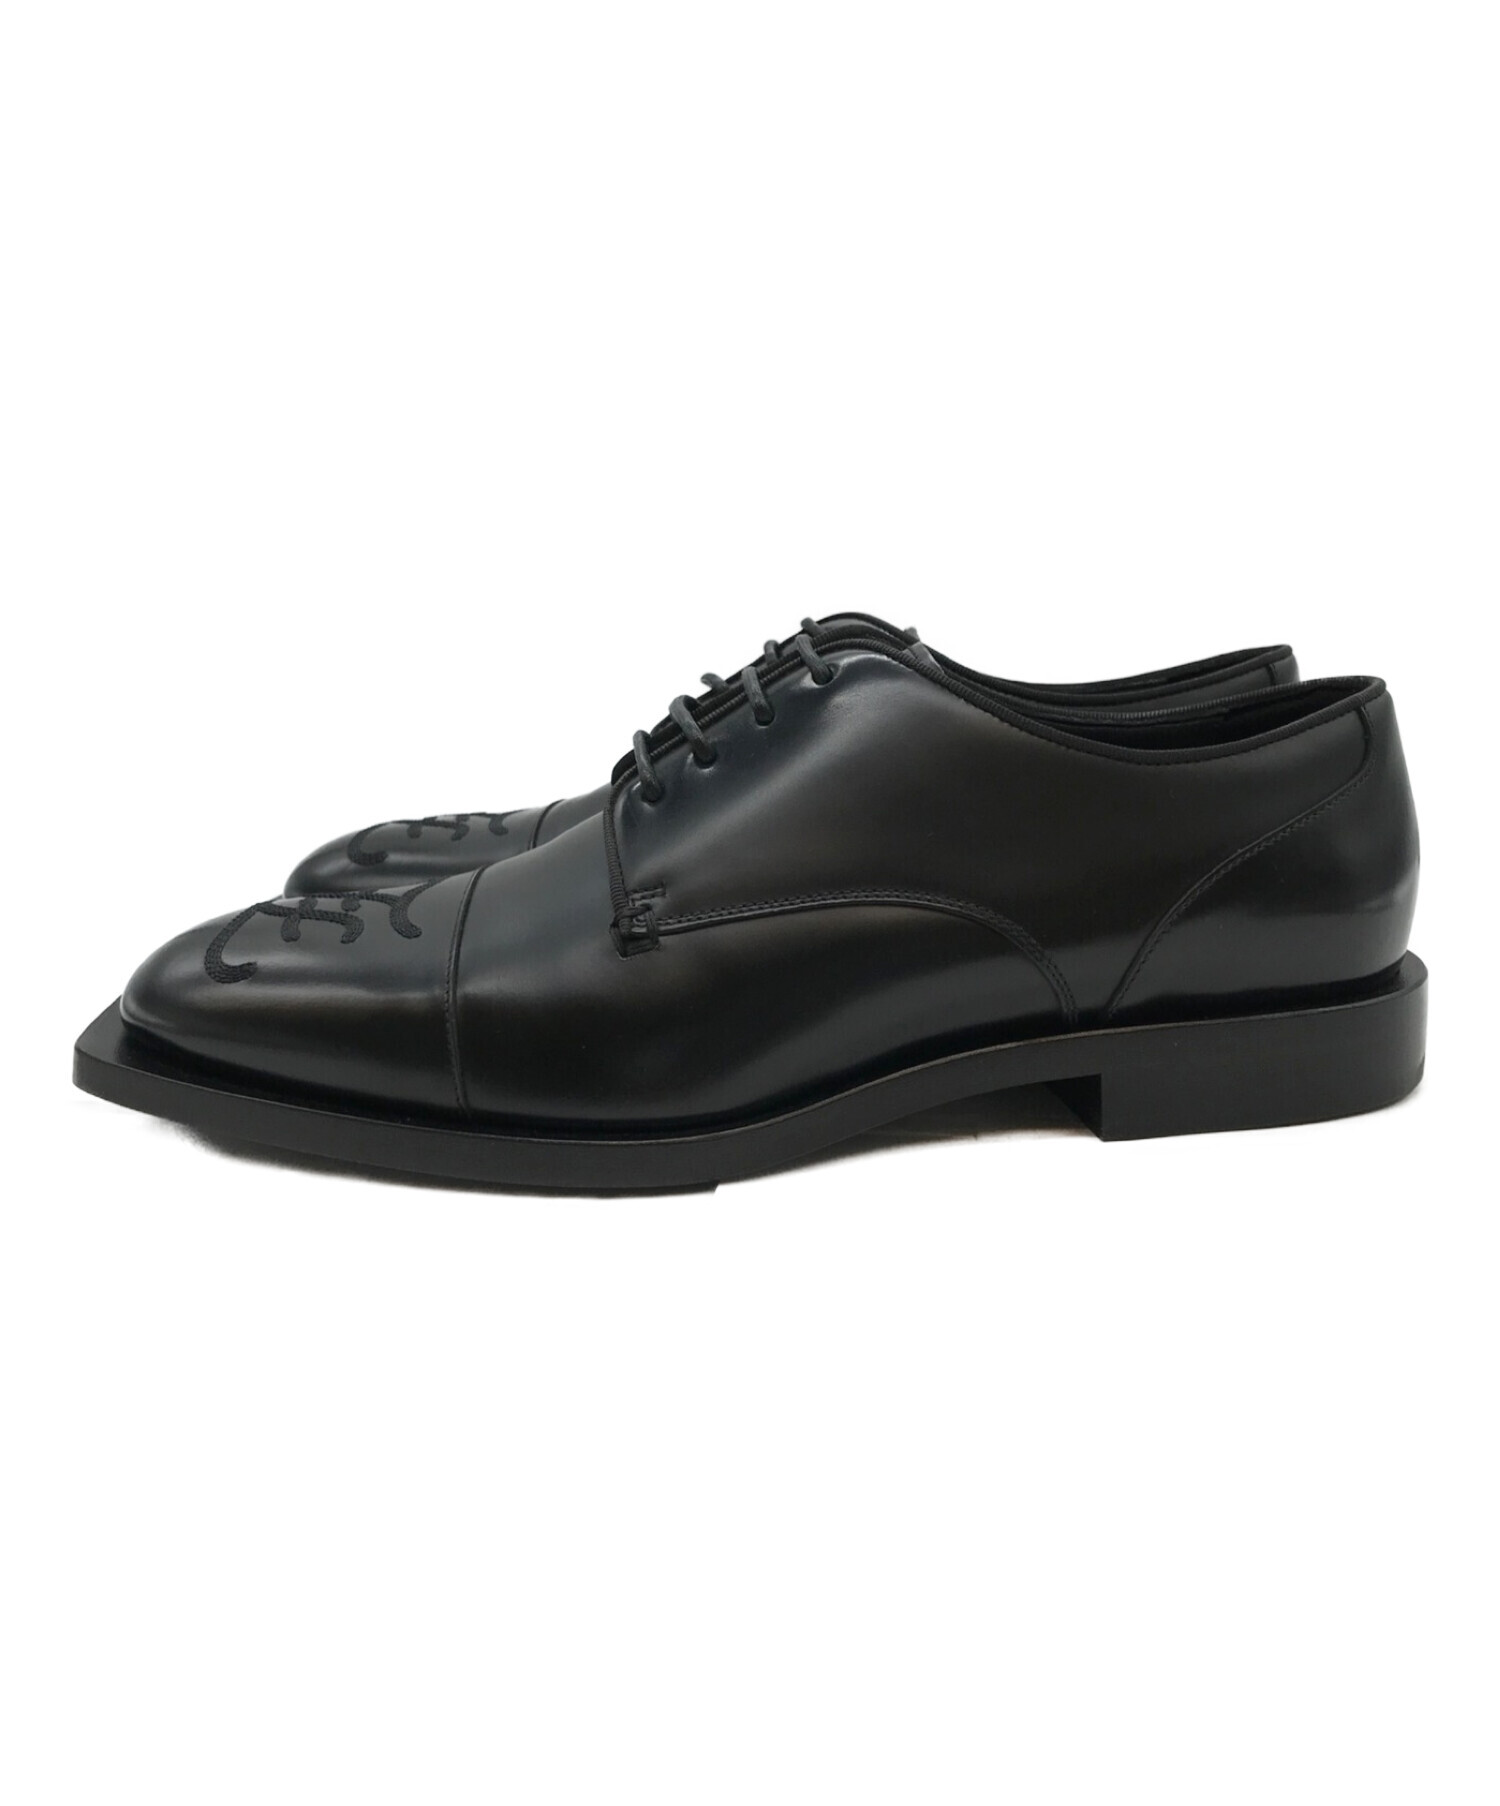 フェンディ FENDI レザーシューズ ビジネスシューズ オックスフォード カーフレザー シューズ 革靴 メンズ 9(28cm相当) ブラック素材カーフレザー